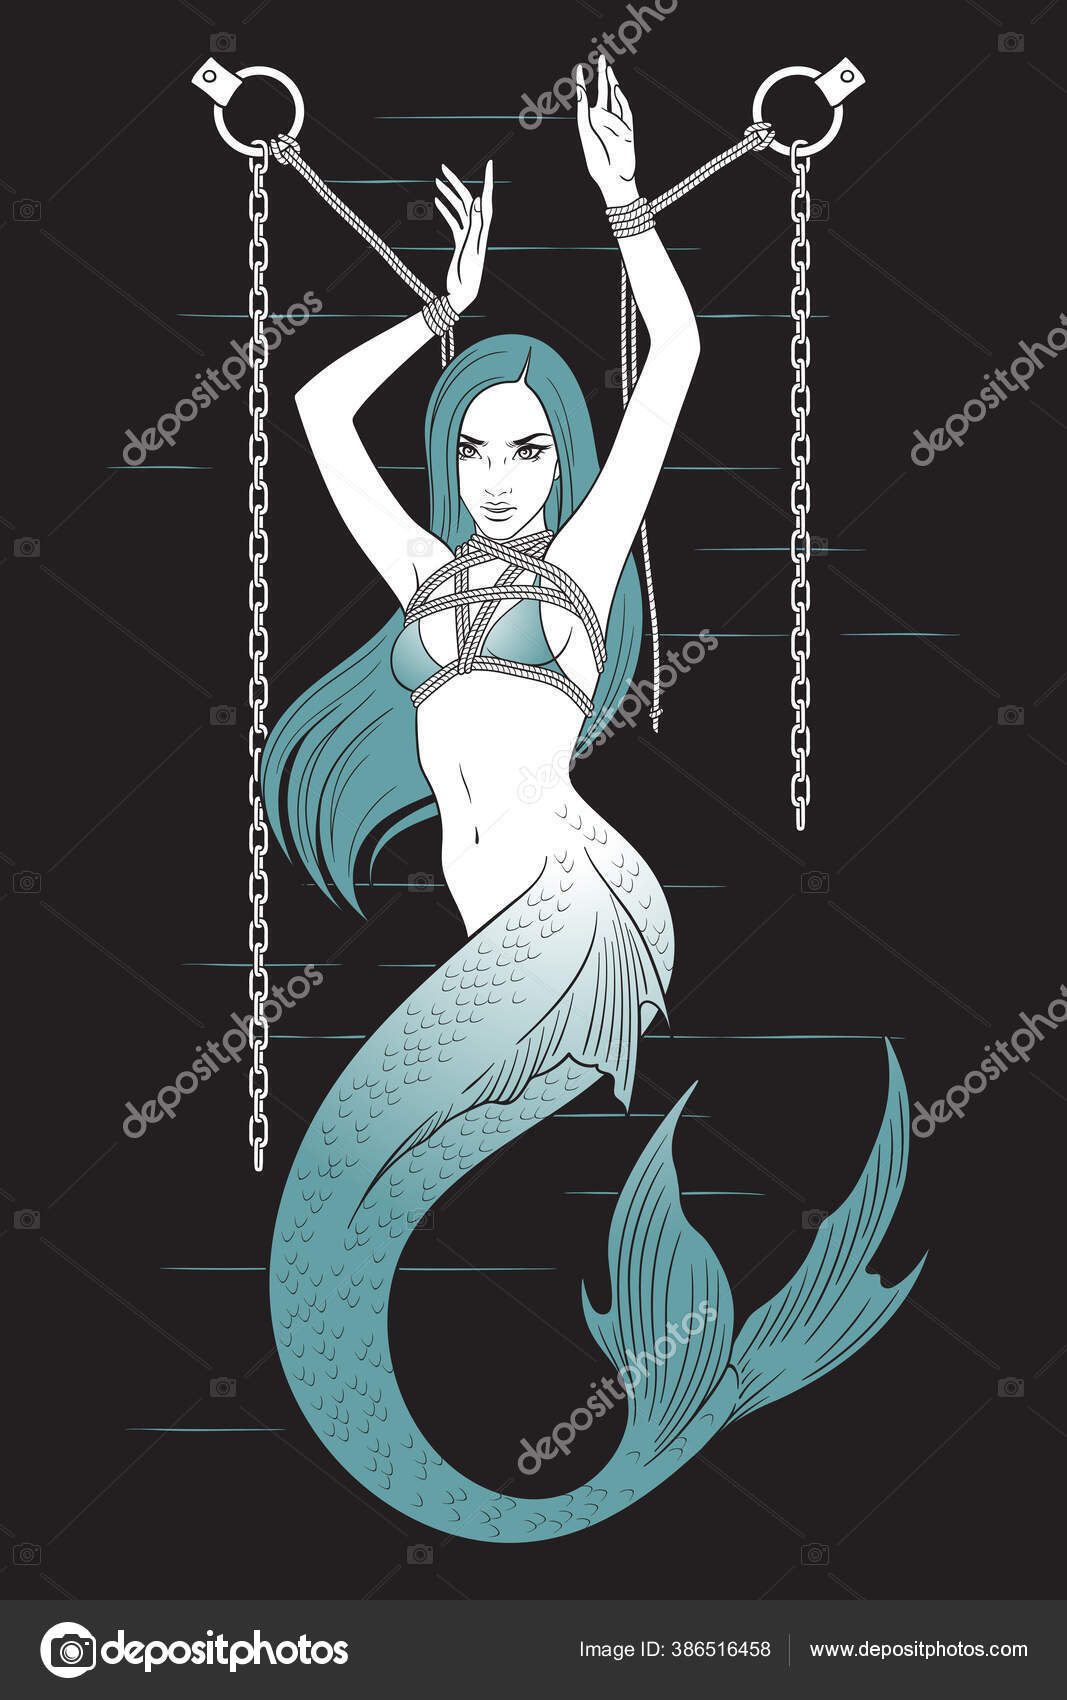 Mermaid fetish